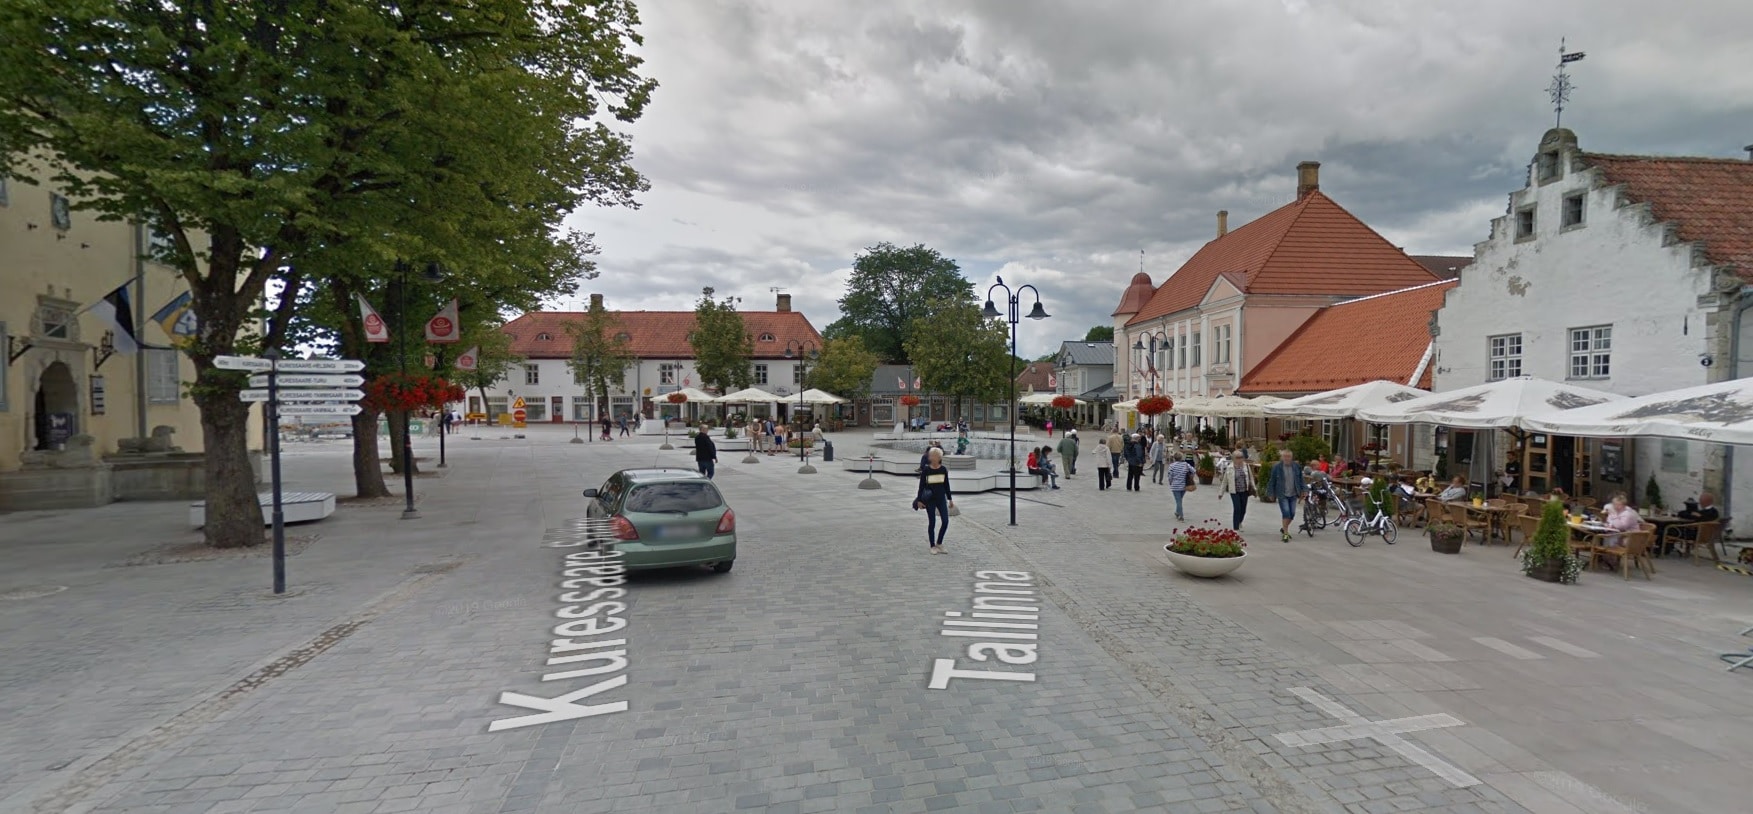 Kuressaare Estland autoluwe binnenstad